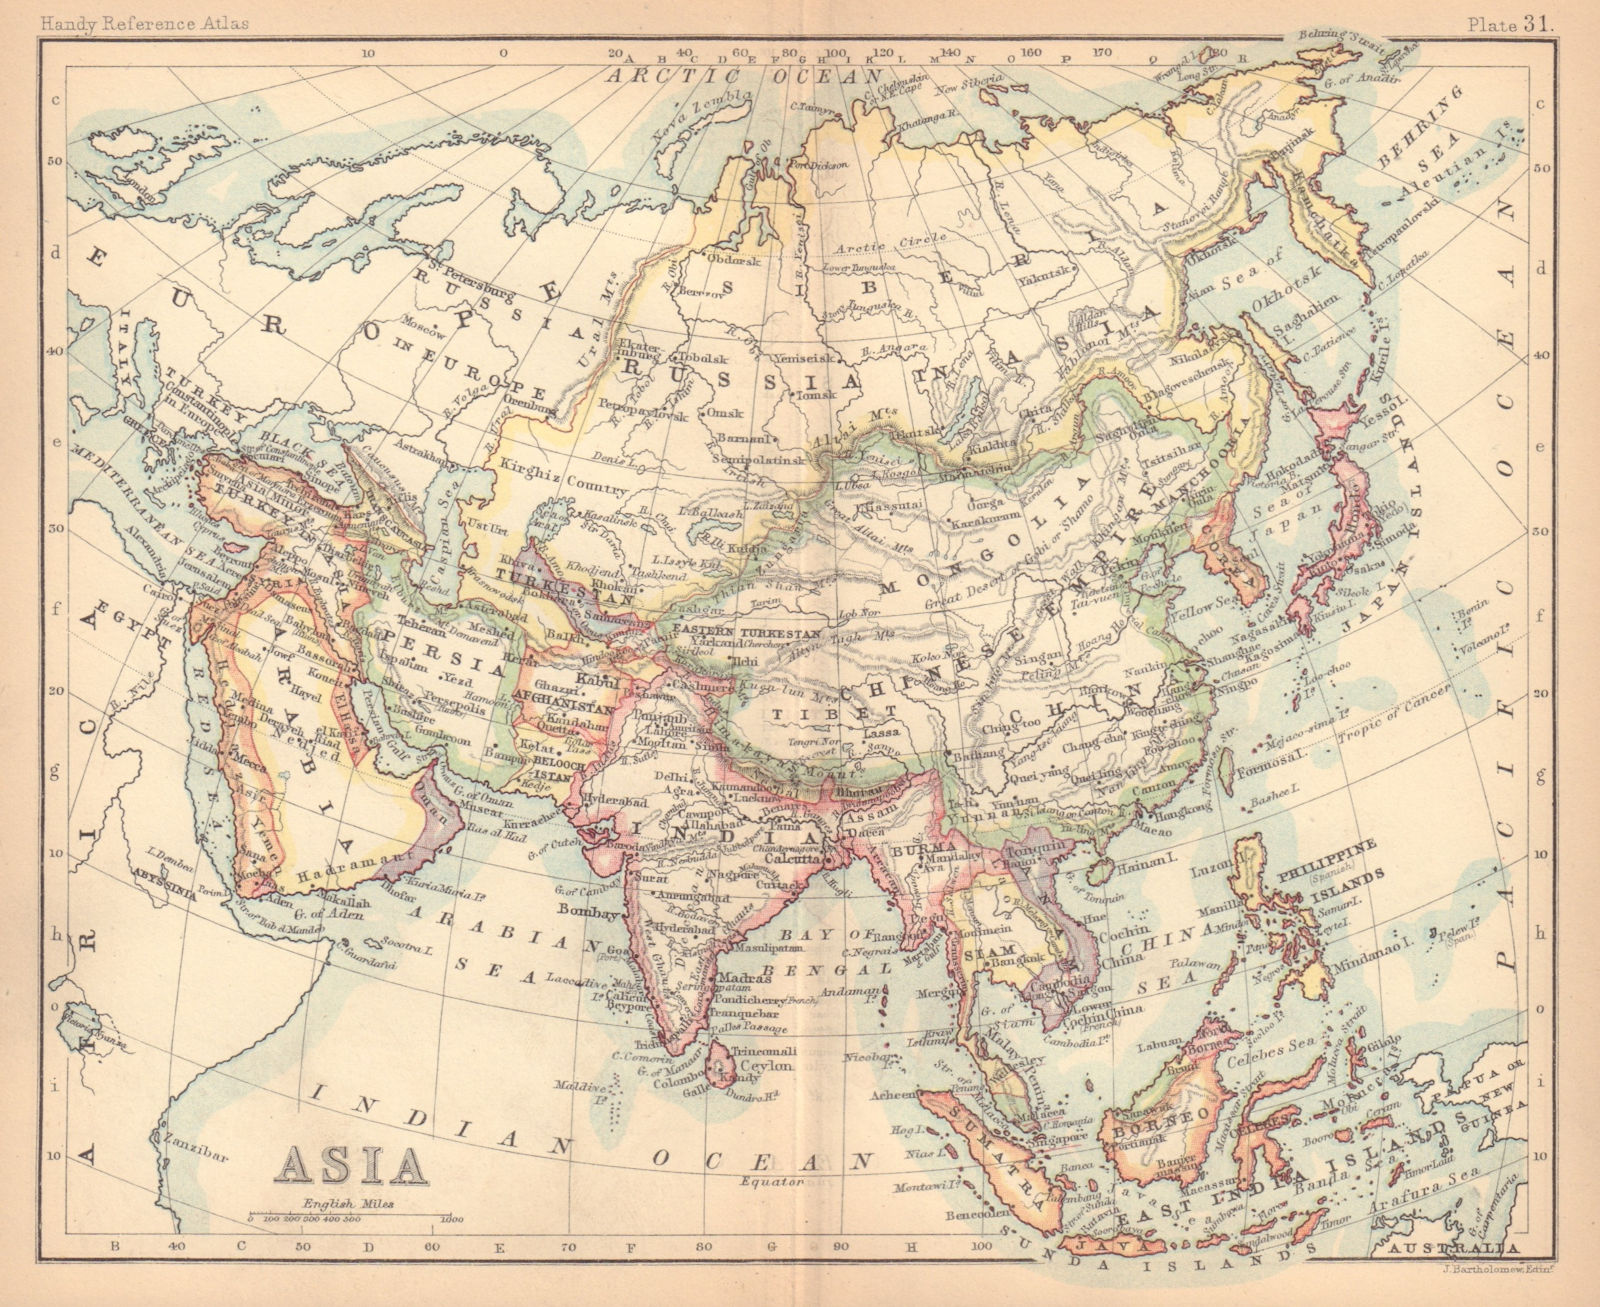 Associate Product Asia. Persia Siam Anam China Corea. BARTHOLOMEW 1888 old antique map chart